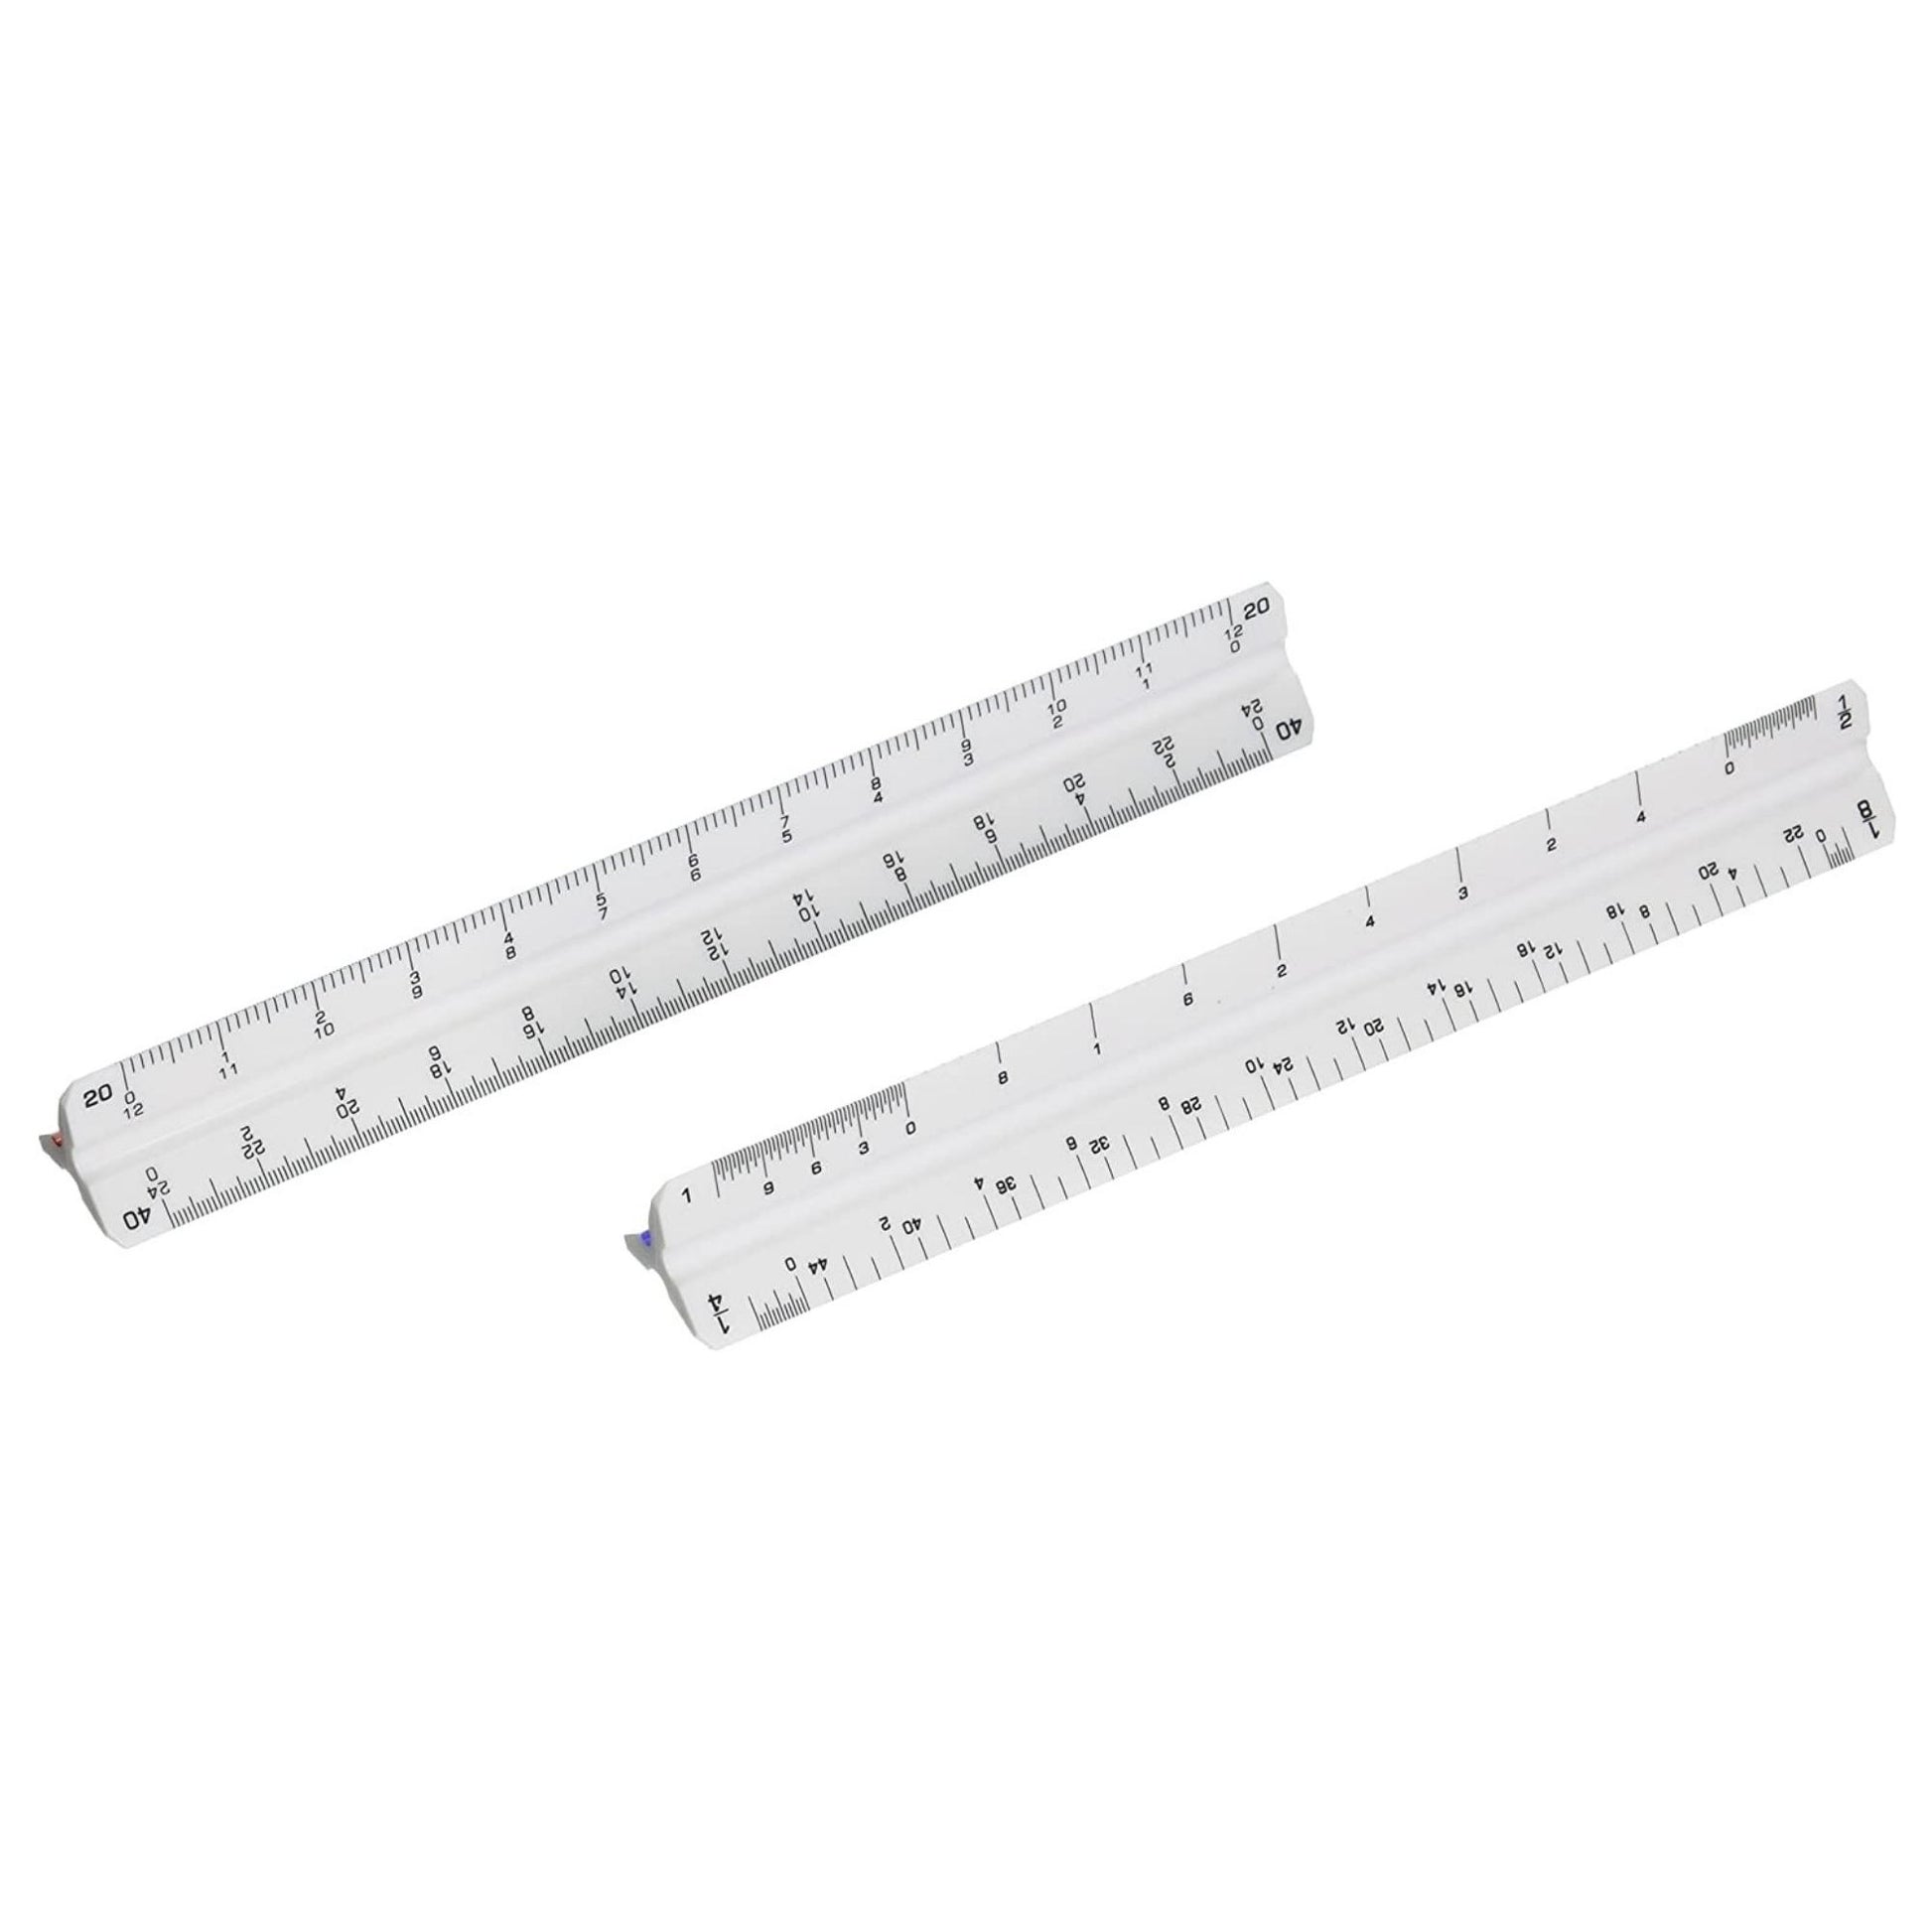 Aluminum metric scales Alvin 2200 drafting metric scale rulers